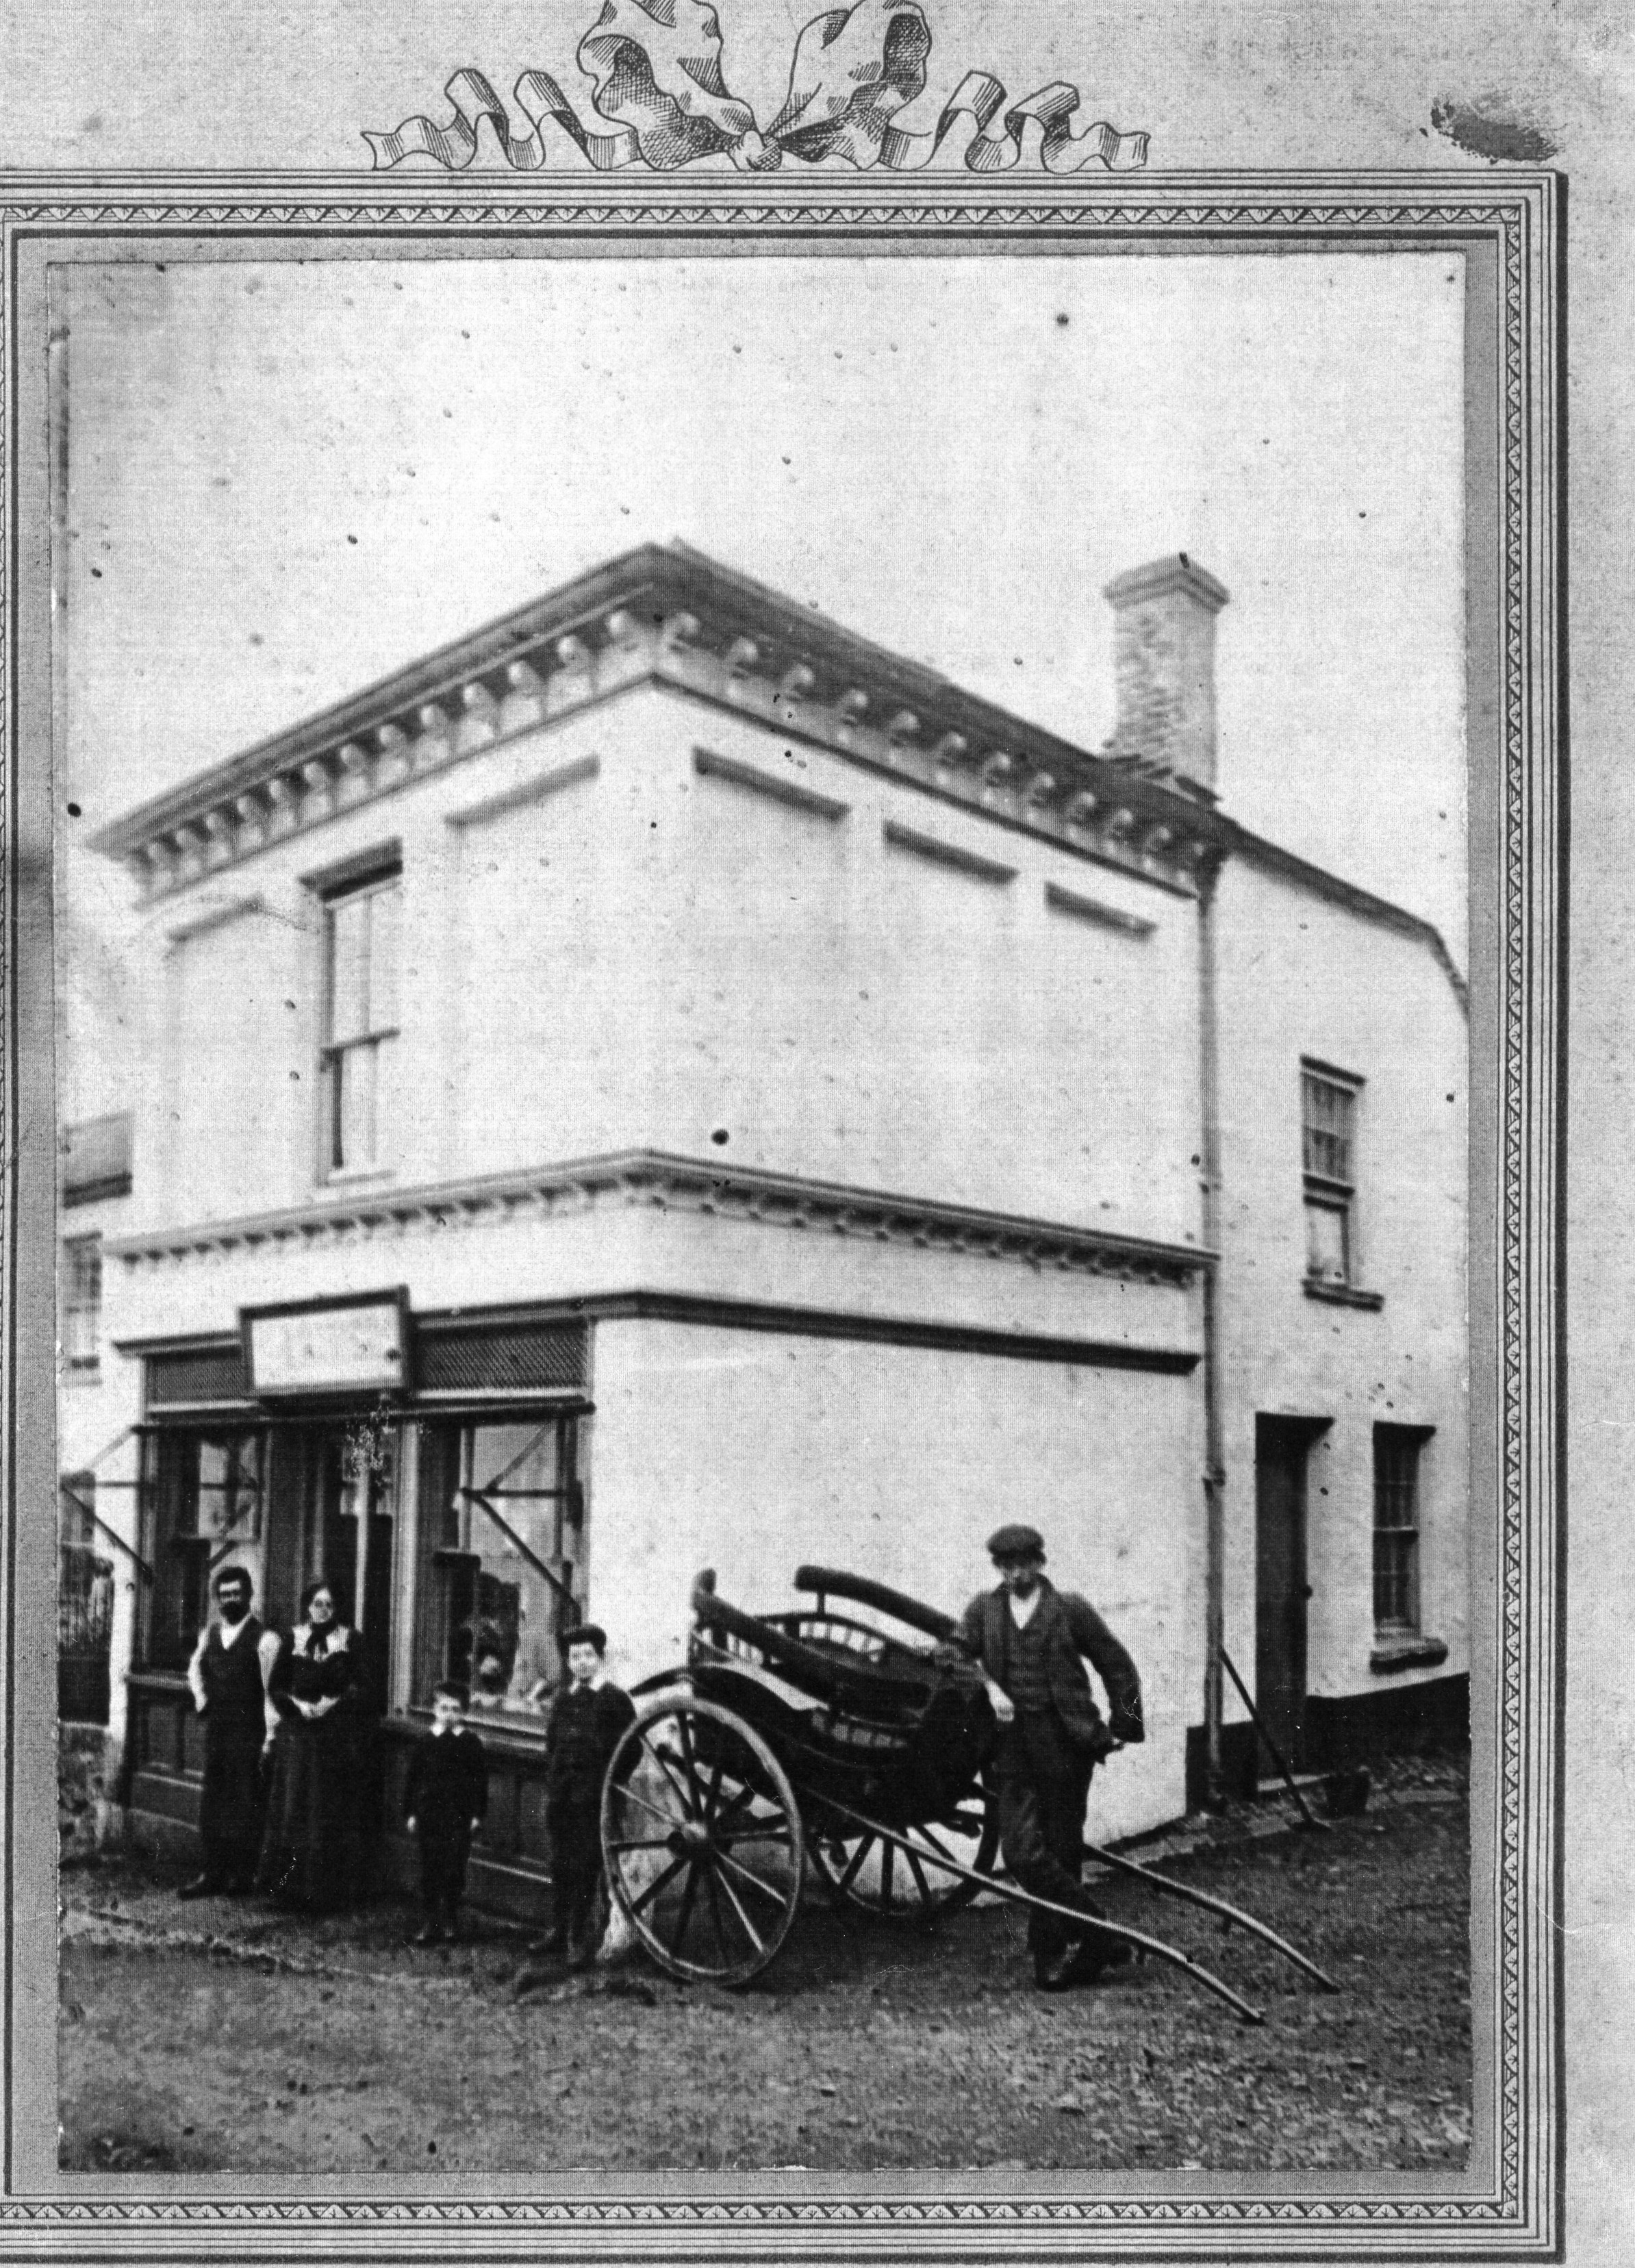 High St Butcher Trenamens shop c. 1900